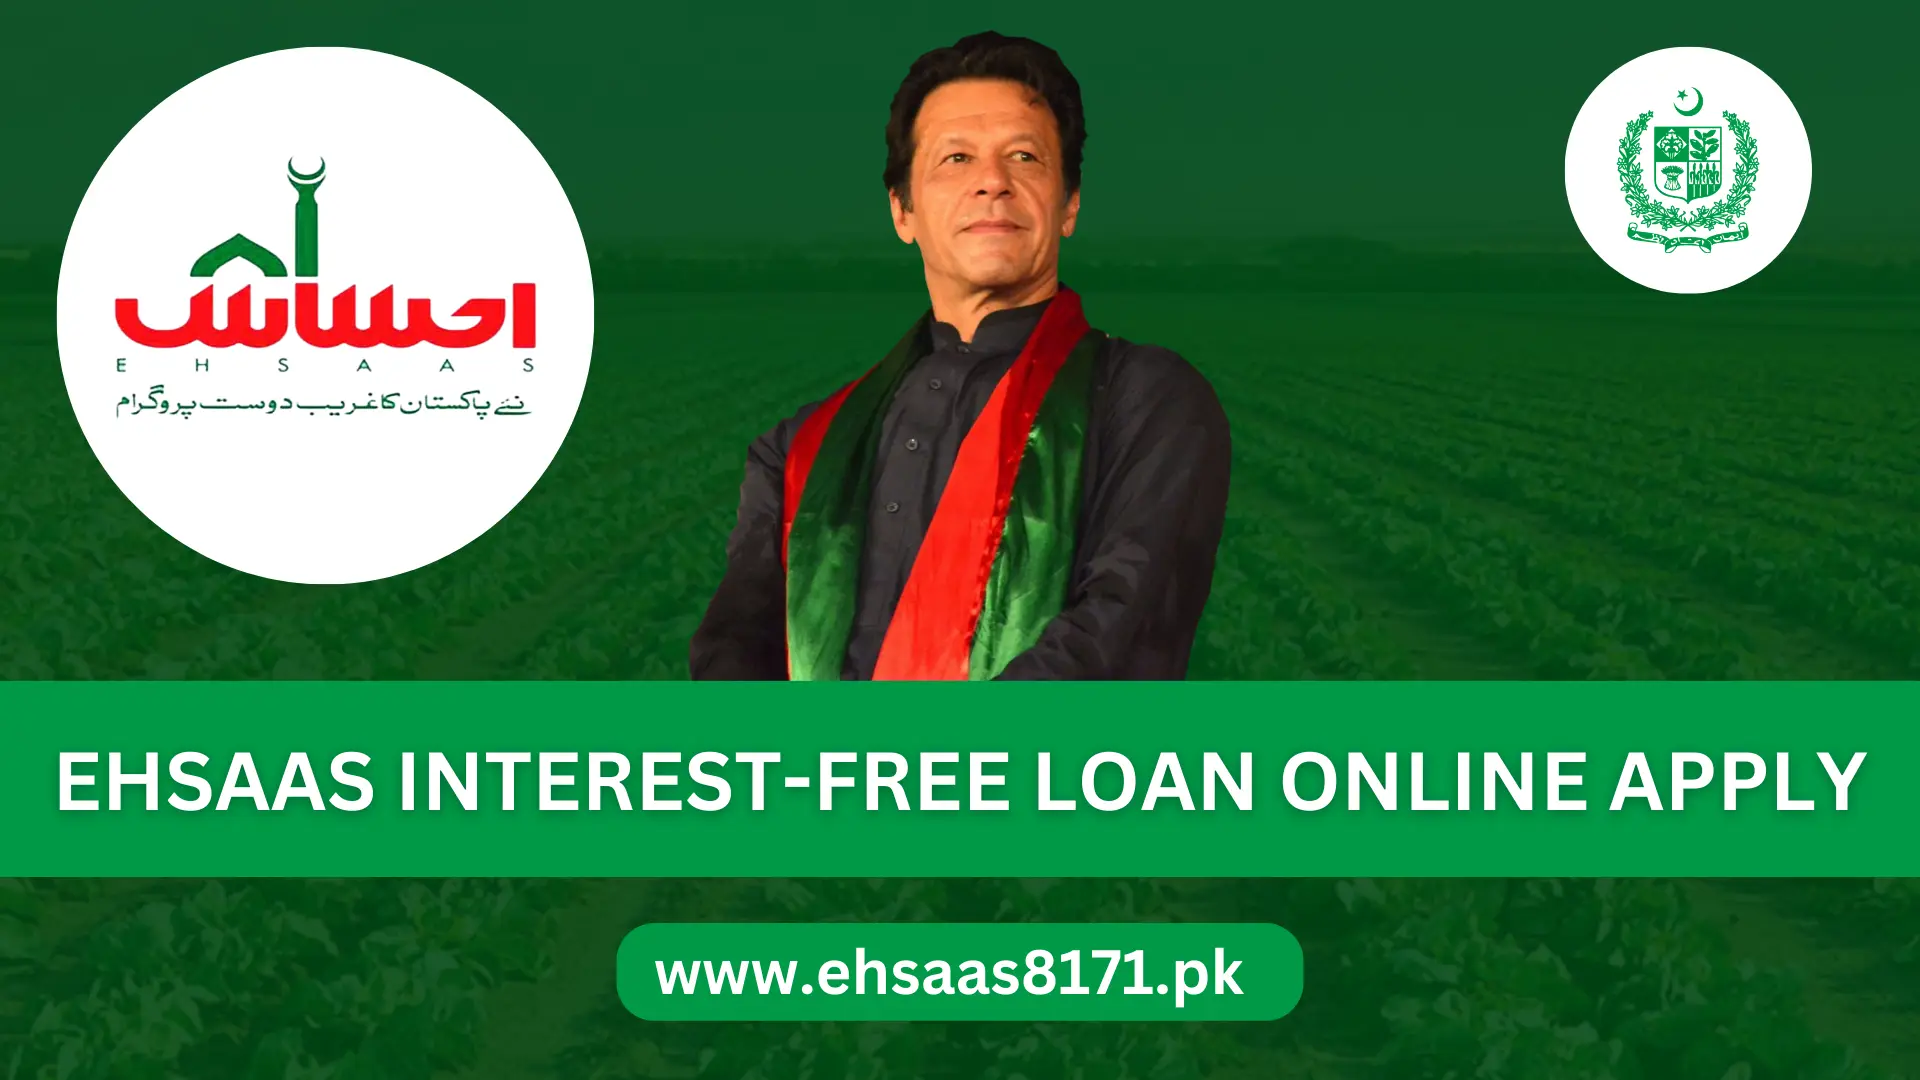 Ehsaas Interest-Free Loan Online Apply